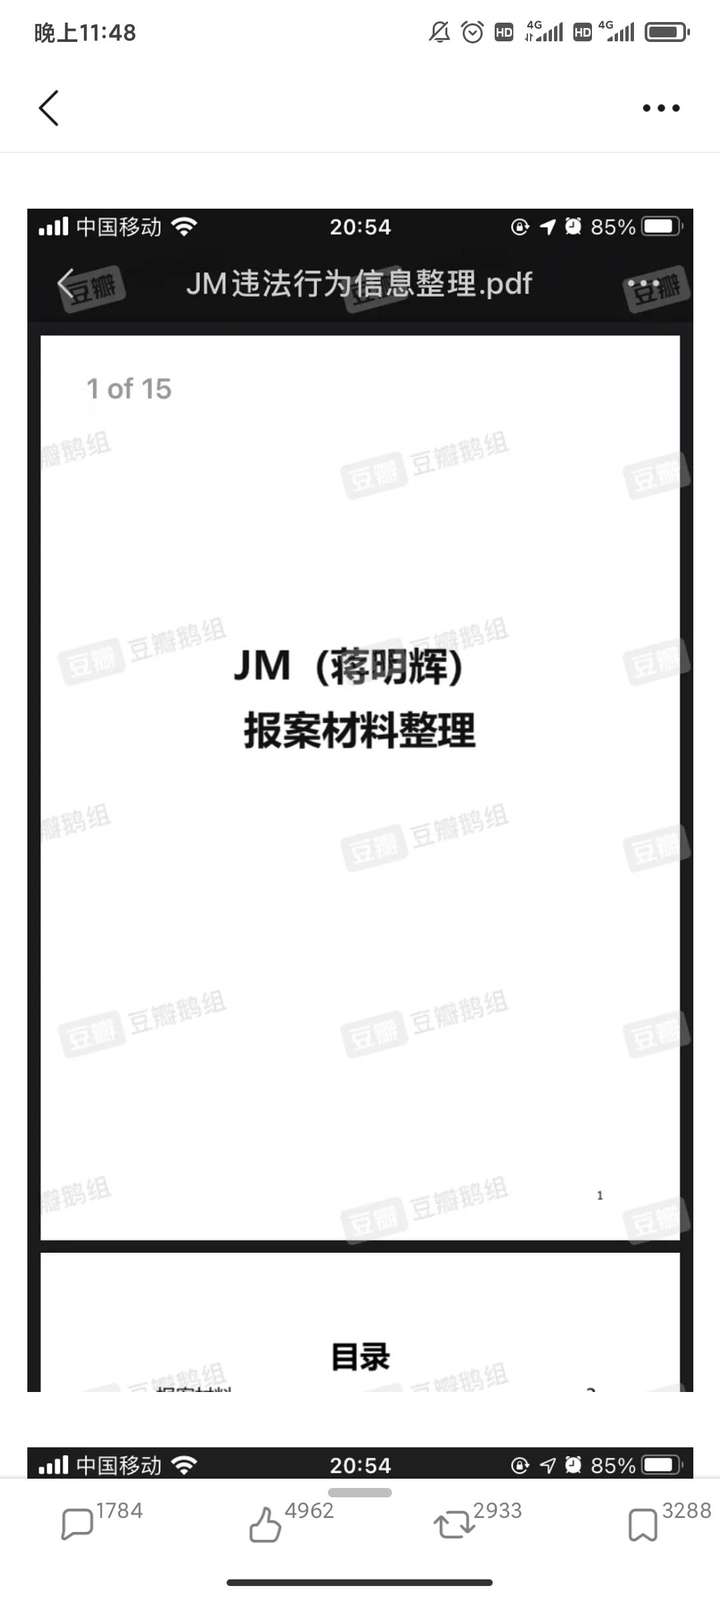 如何看待《jm帝国》作者蒋明辉因涉嫌制作淫秽物品牟利罪被沈阳公安